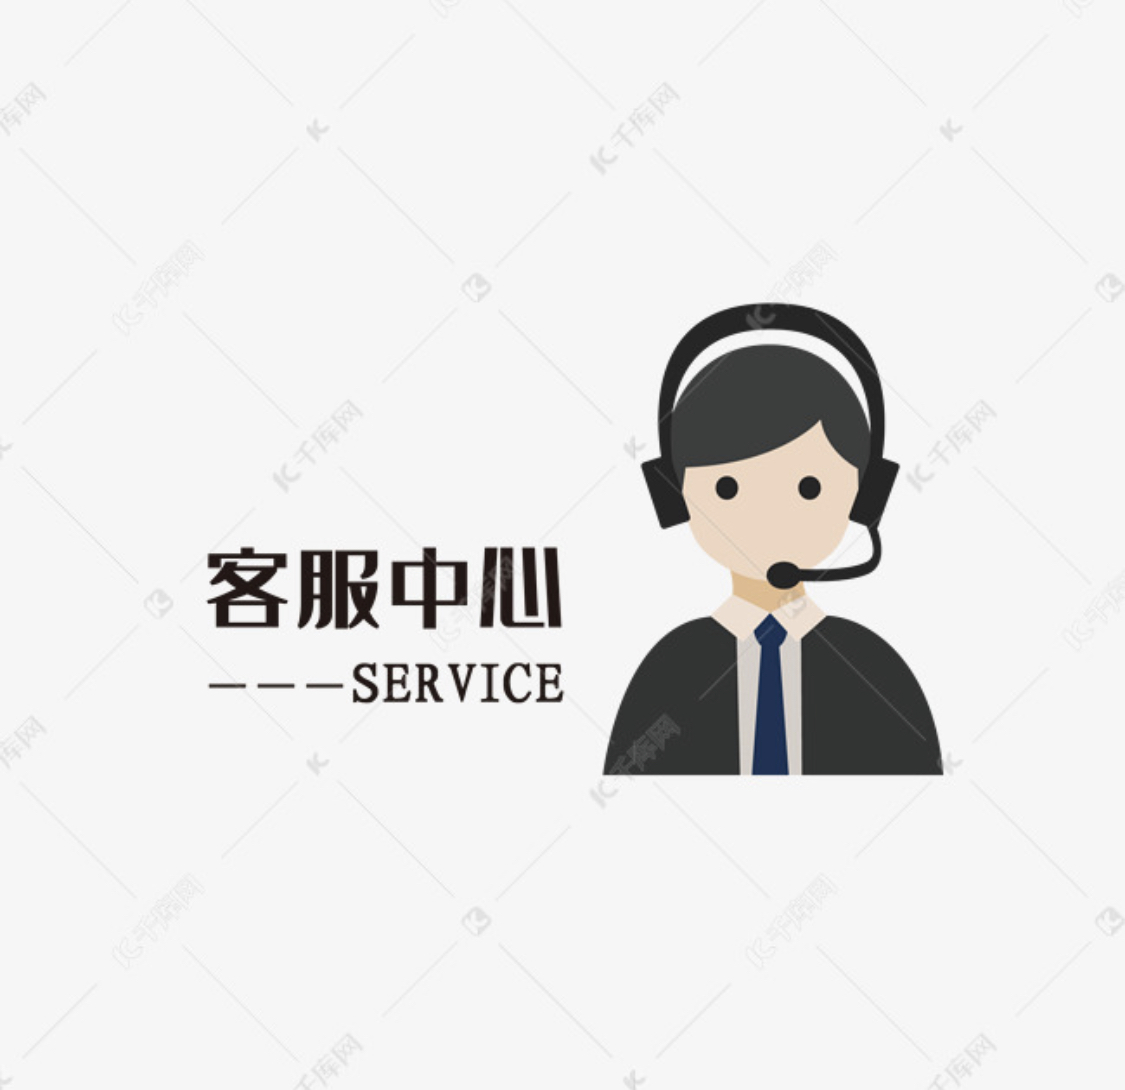 昌平北七家市制冰机上门维修热线电话-制冰机售后维修服务热线4006661443